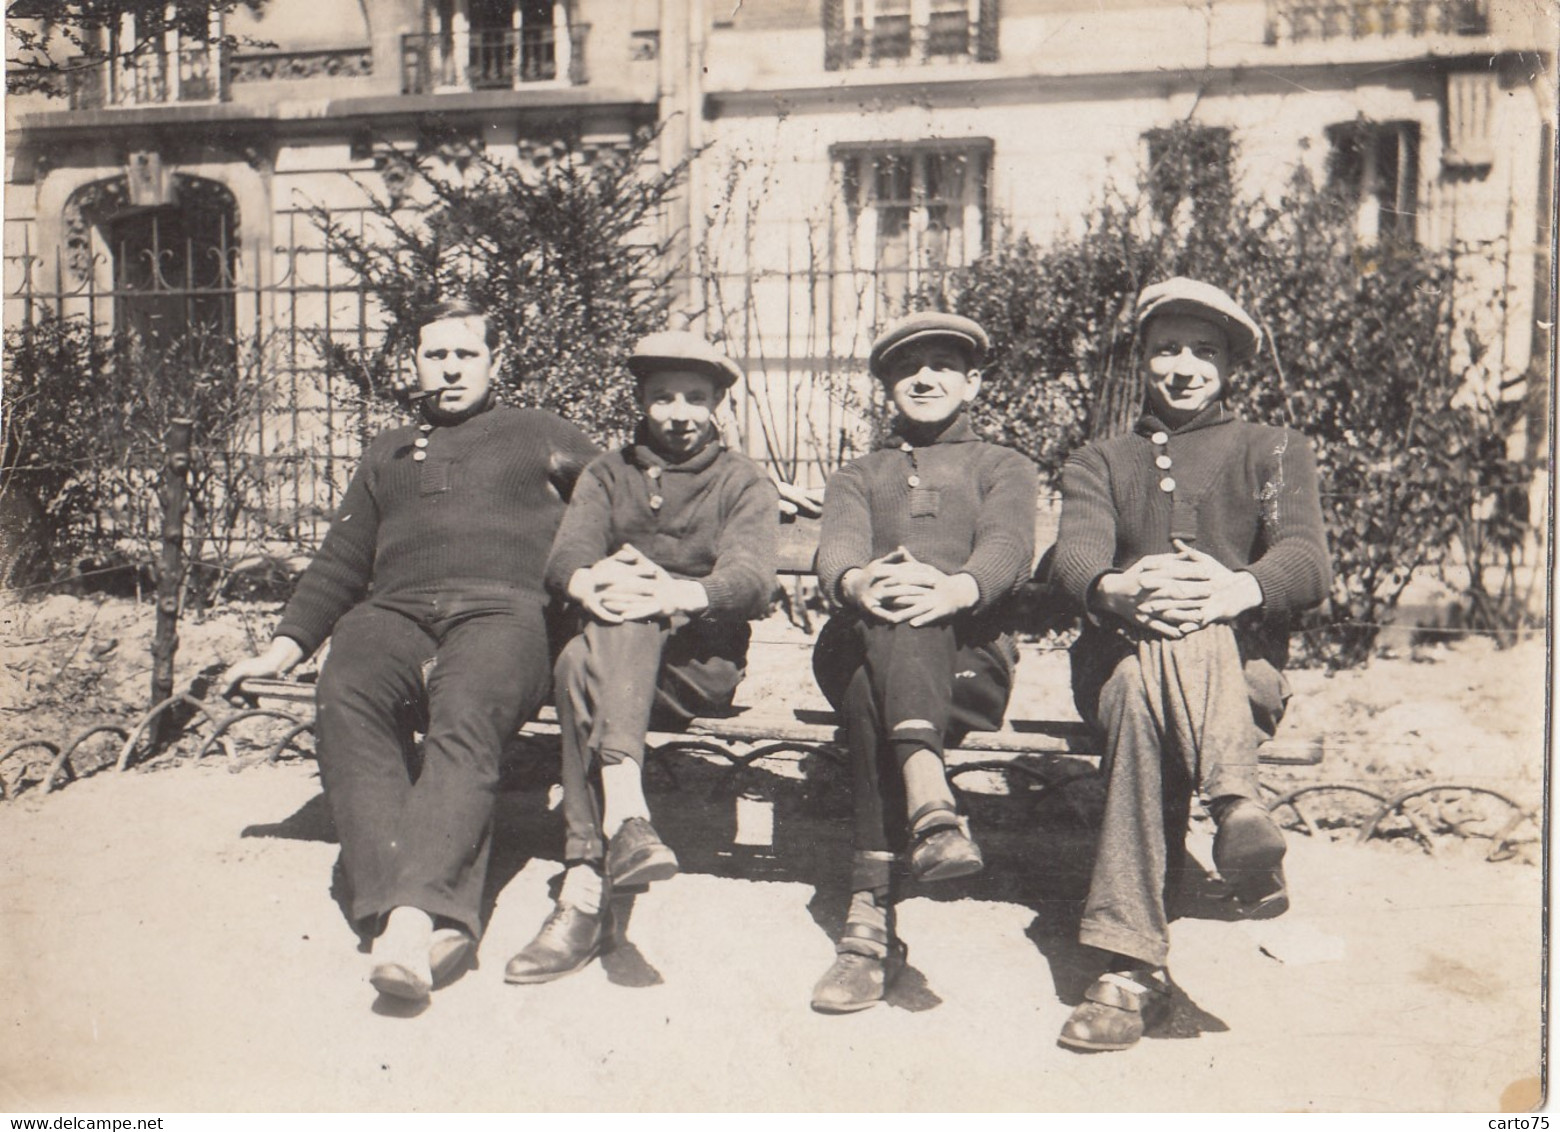 Photographie - 4 Hommes Assis Sur Un Banc - Parc Paris ? - Mode - Années 1930 - Photographs